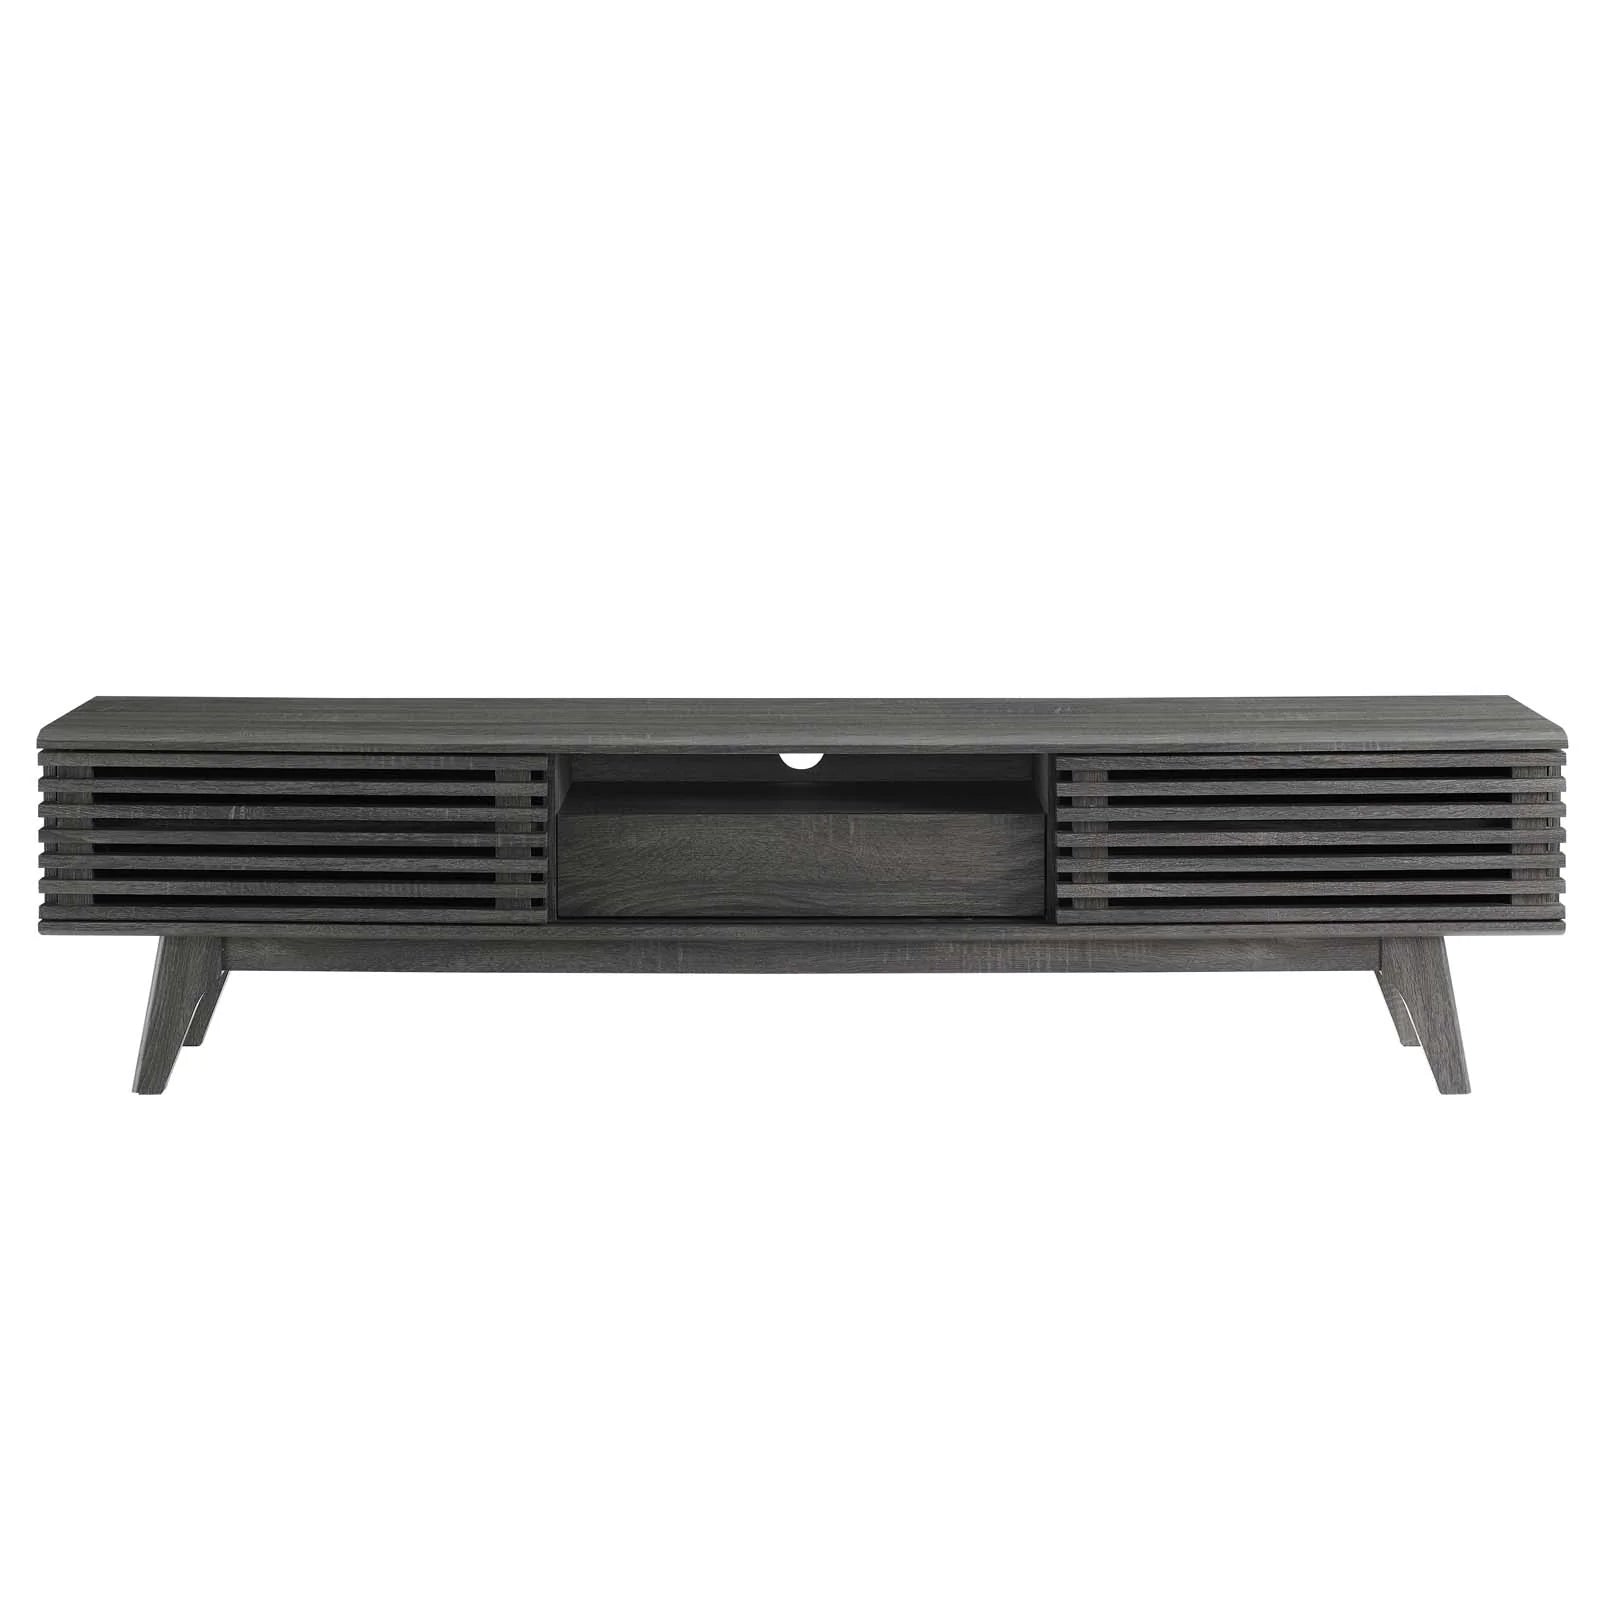 Mueble de 70” para TV Niklas color negro de frente.